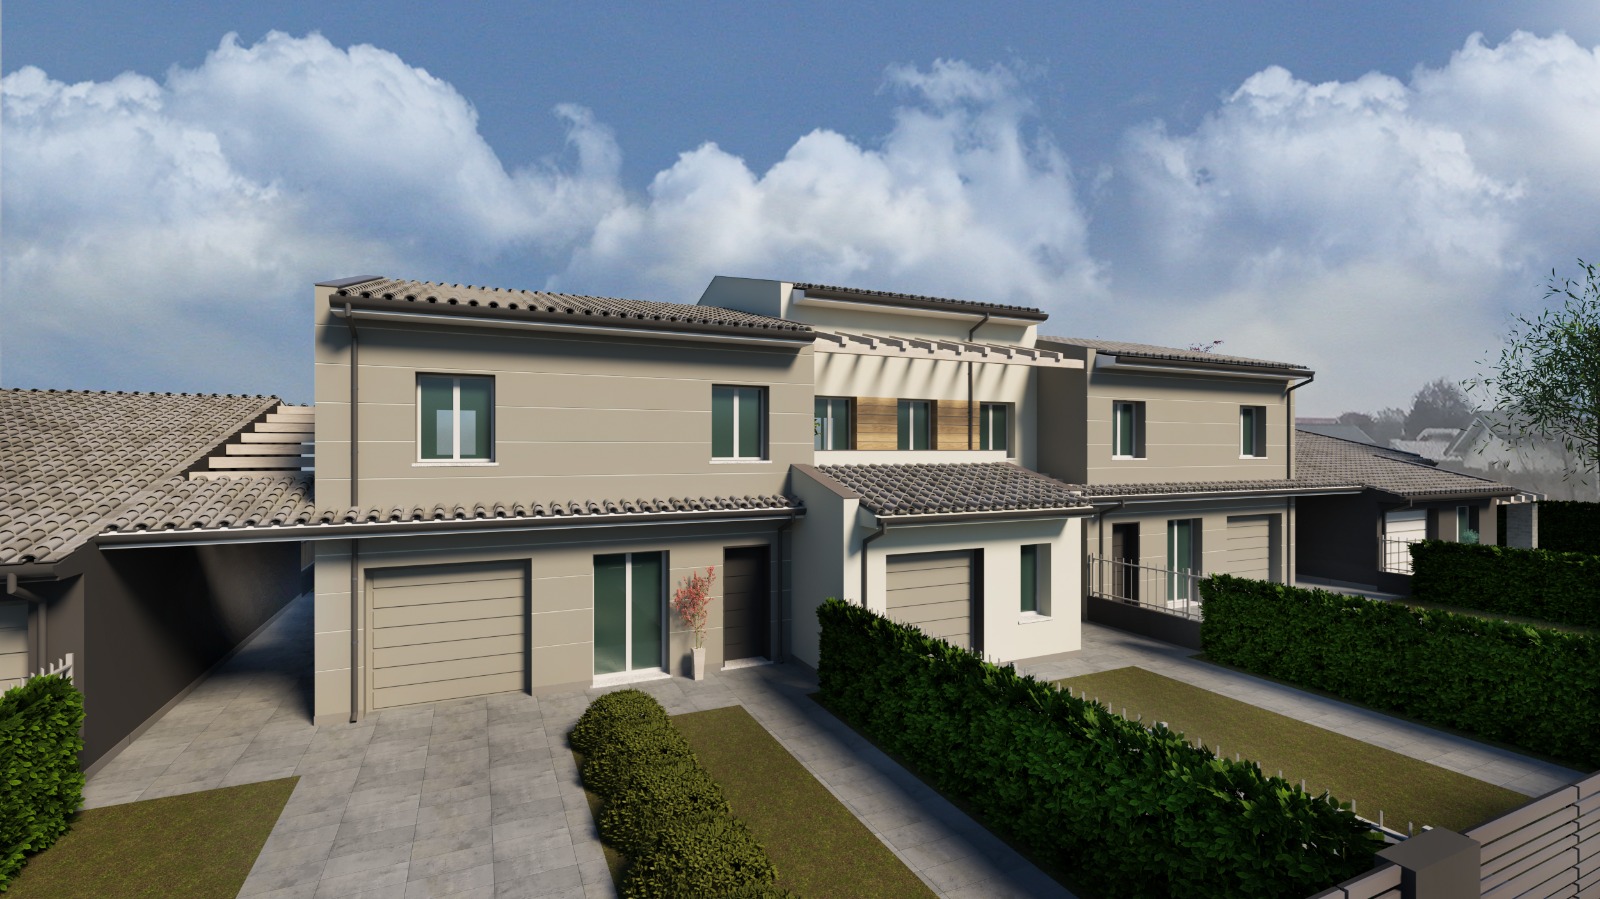 Nuova villa ad angolo a Suzzara